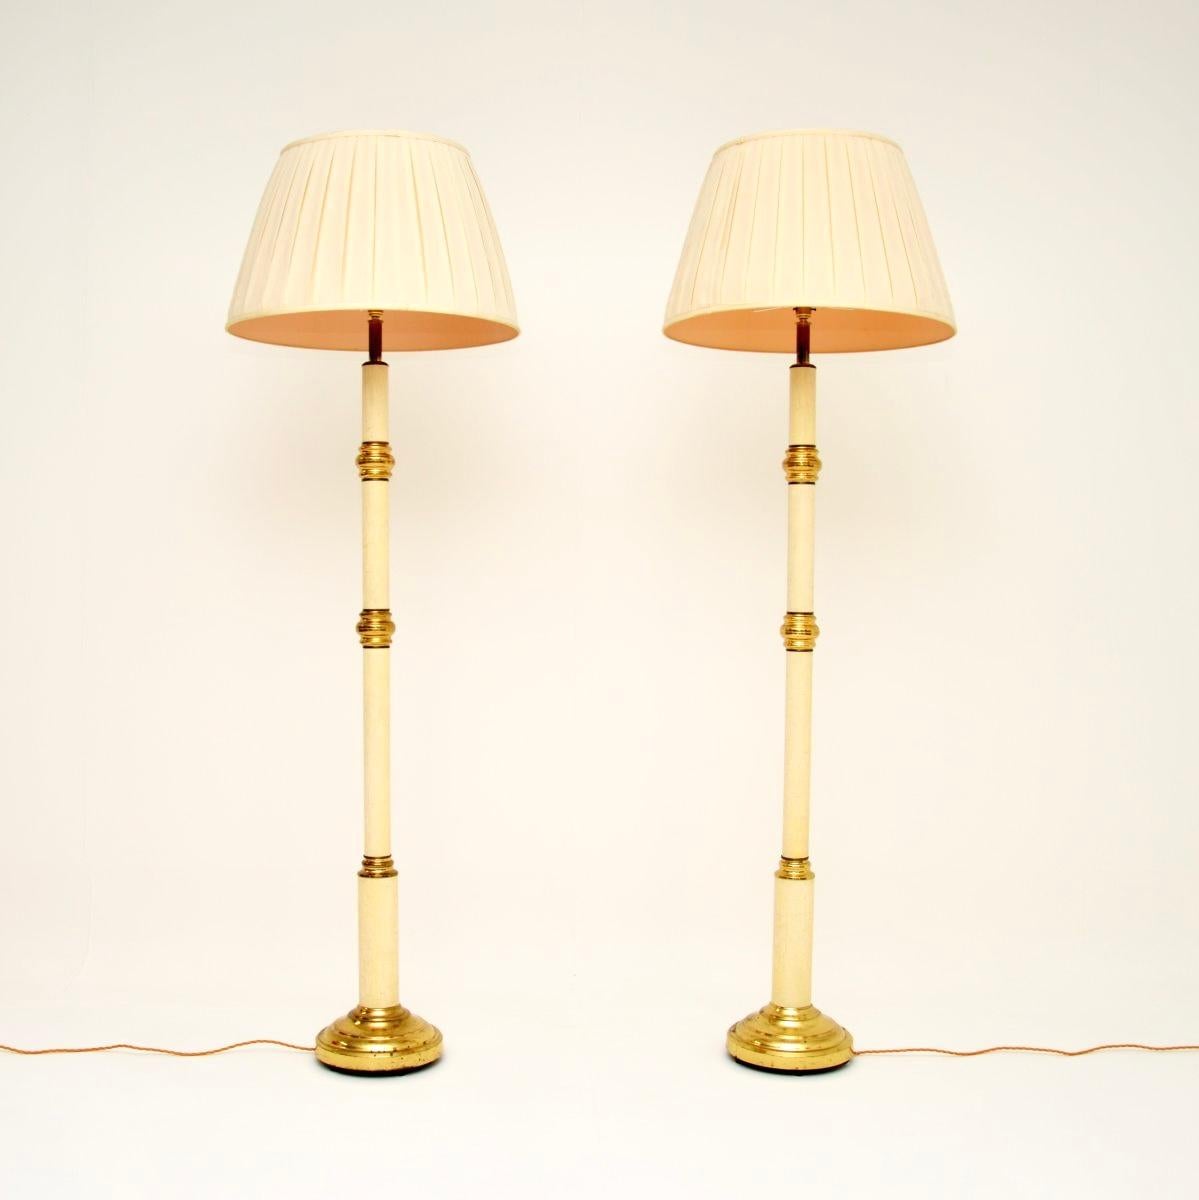 Une paire absolument superbe de lampadaires vintage par Clive Rowland. Ils ont été fabriqués en Angleterre et datent des années 1970.

La qualité est exceptionnelle, ils sont fabriqués à partir d'une combinaison de laiton massif et de métal émaillé,